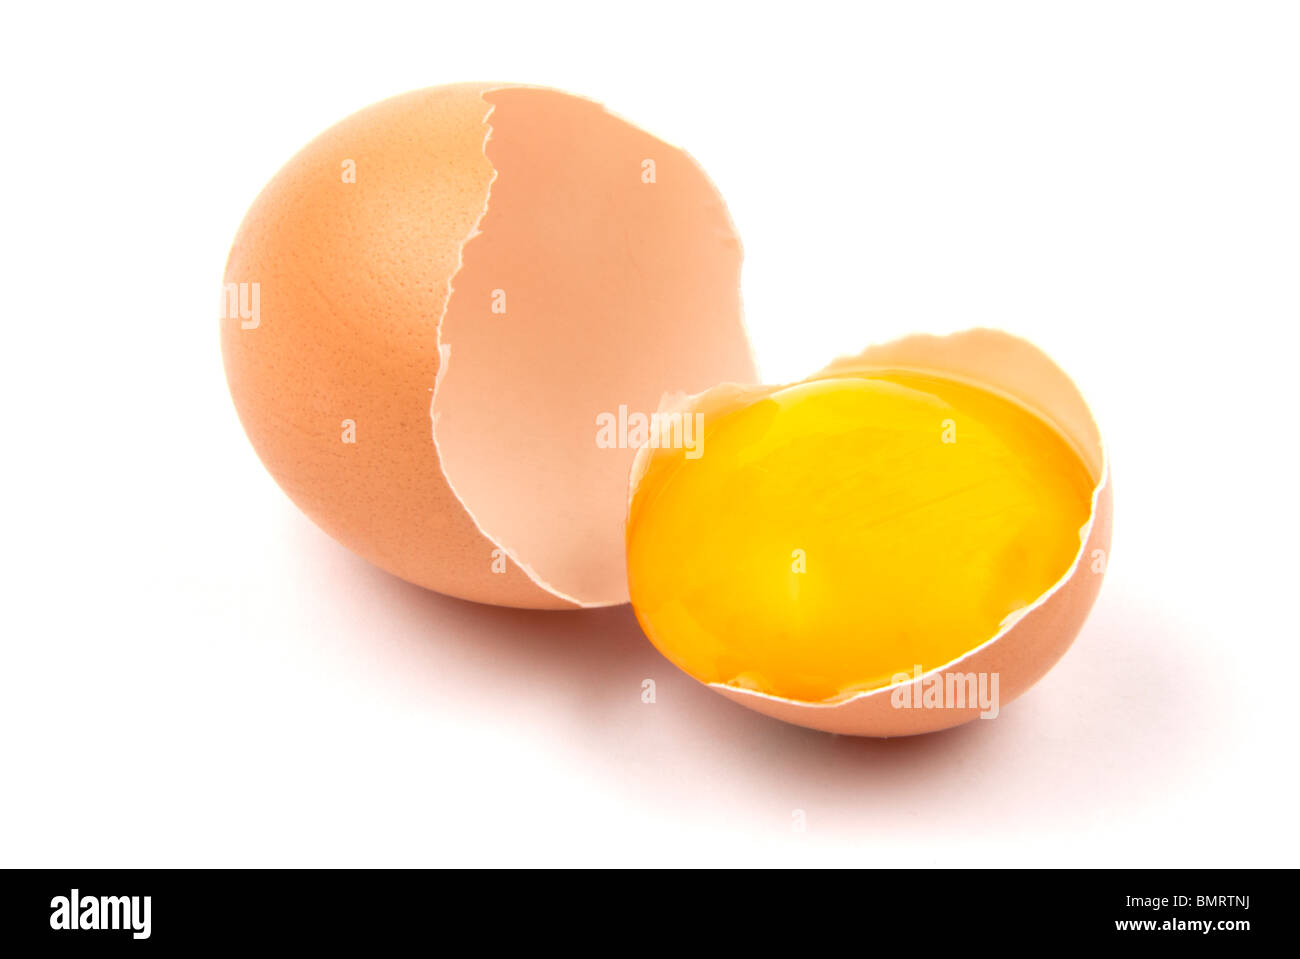 Uovo rotto con tuorlo d'uovo, isolato su sfondo bianco Foto Stock